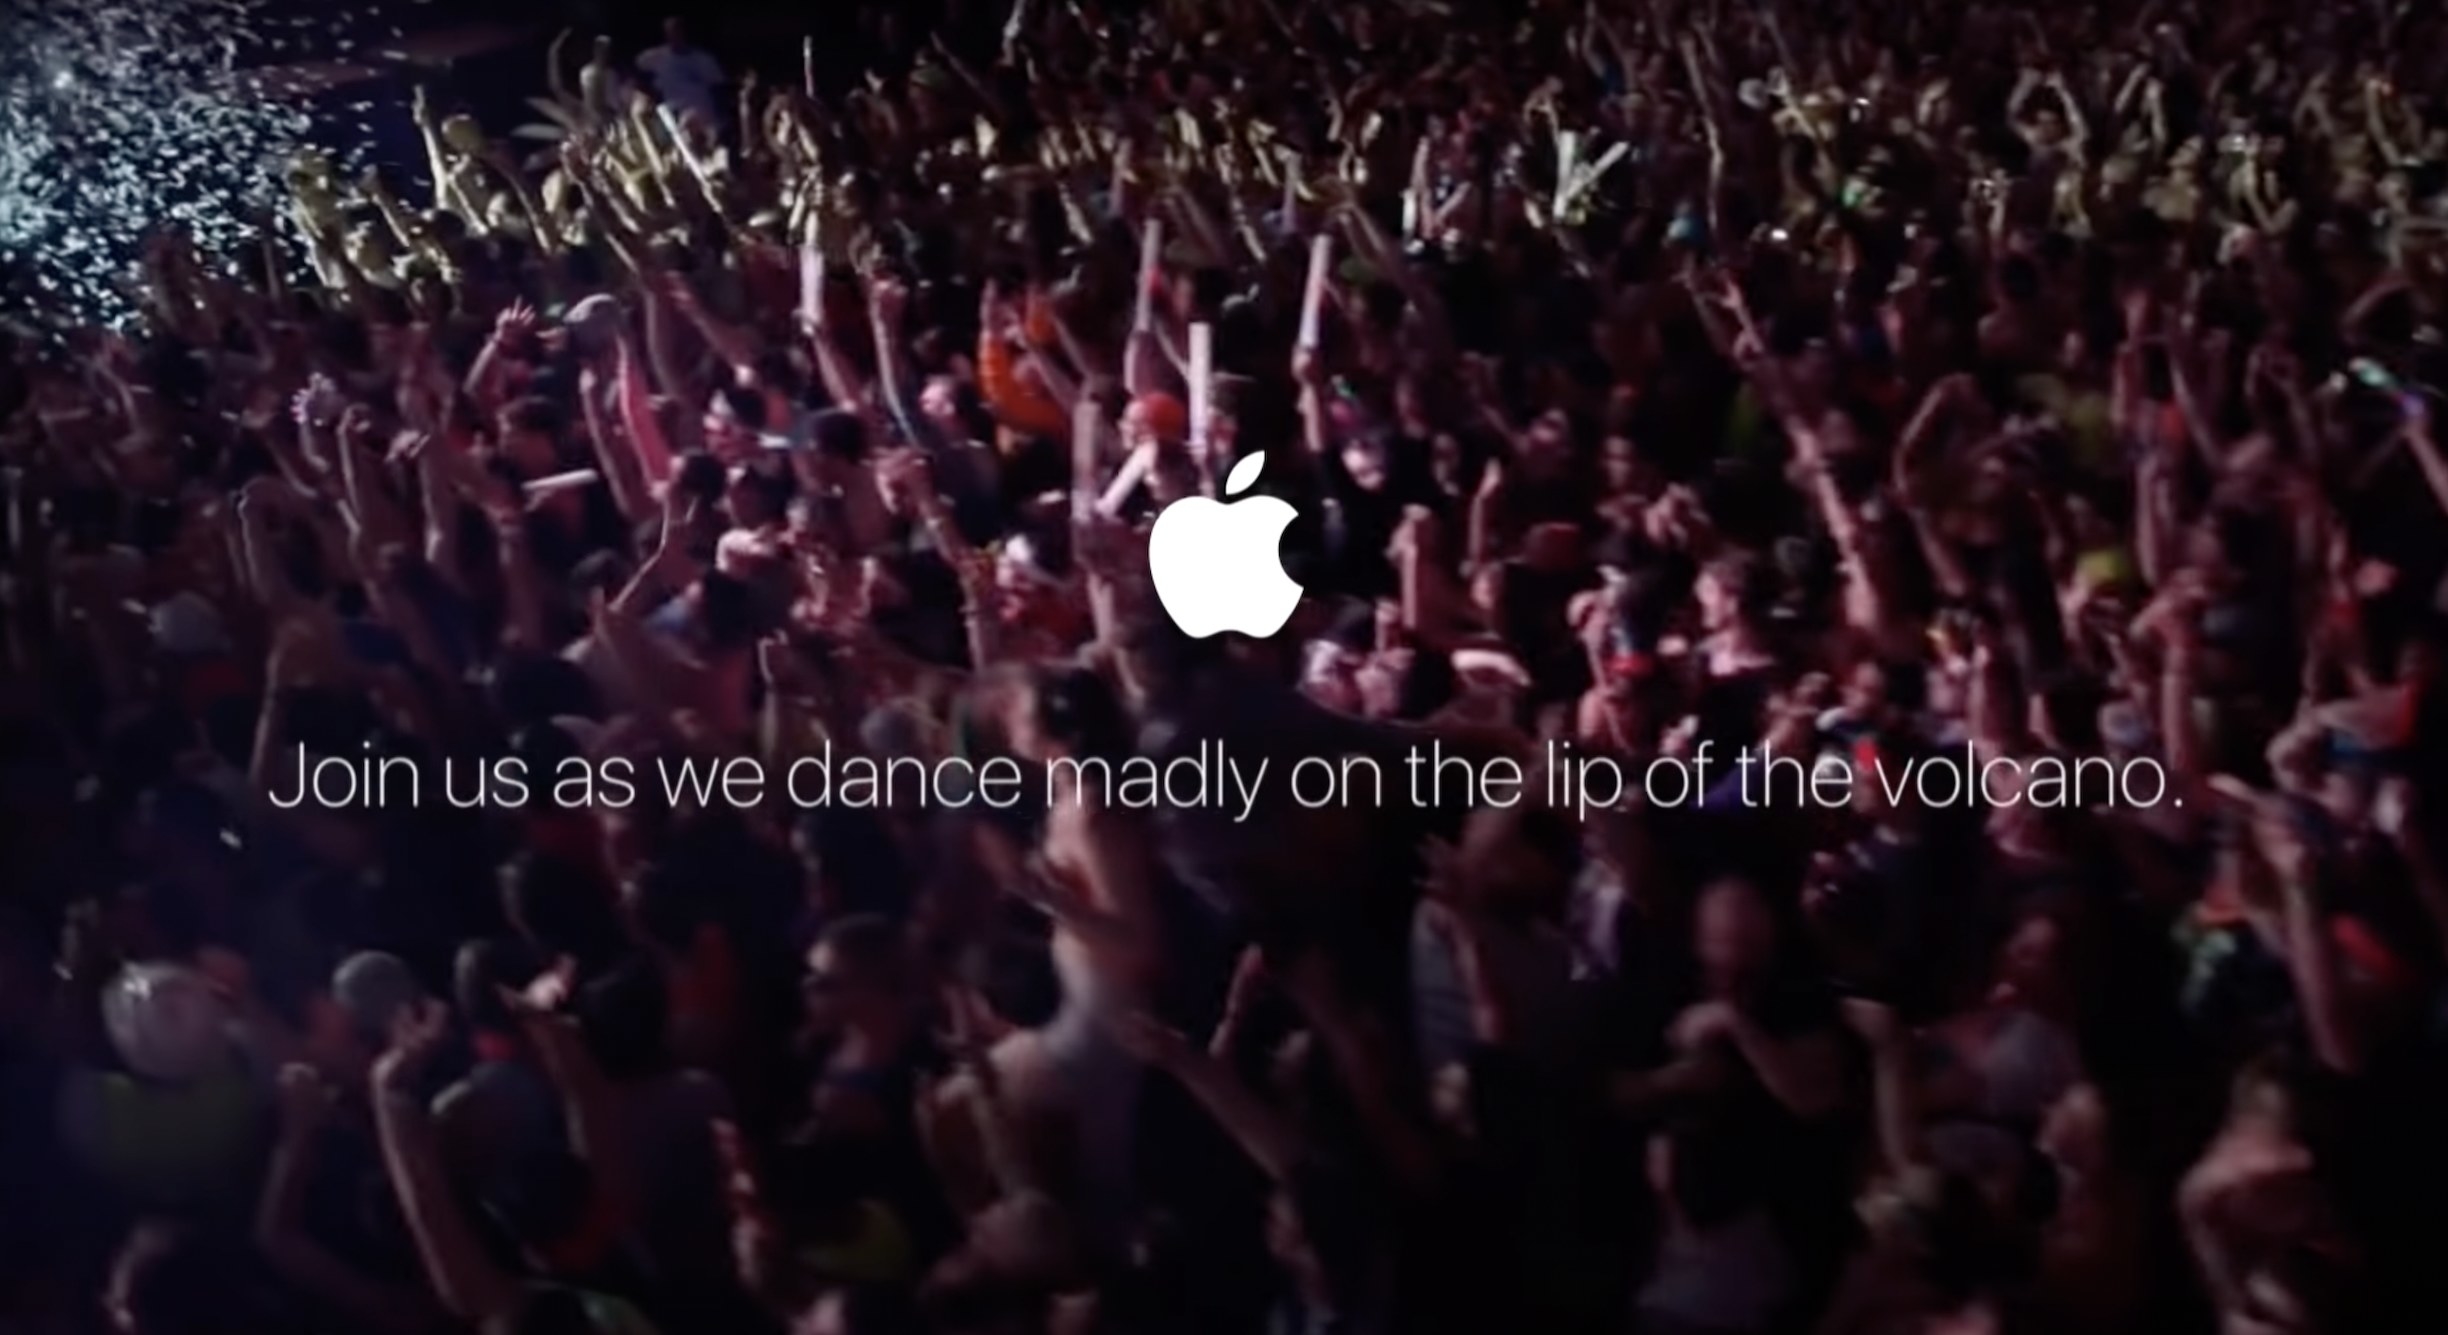 看起来像Apple添加的东西，在一个口号上的苹果徽标下方的人群的图像说，当我们疯狂地在火山的嘴唇上跳舞时，加入我们